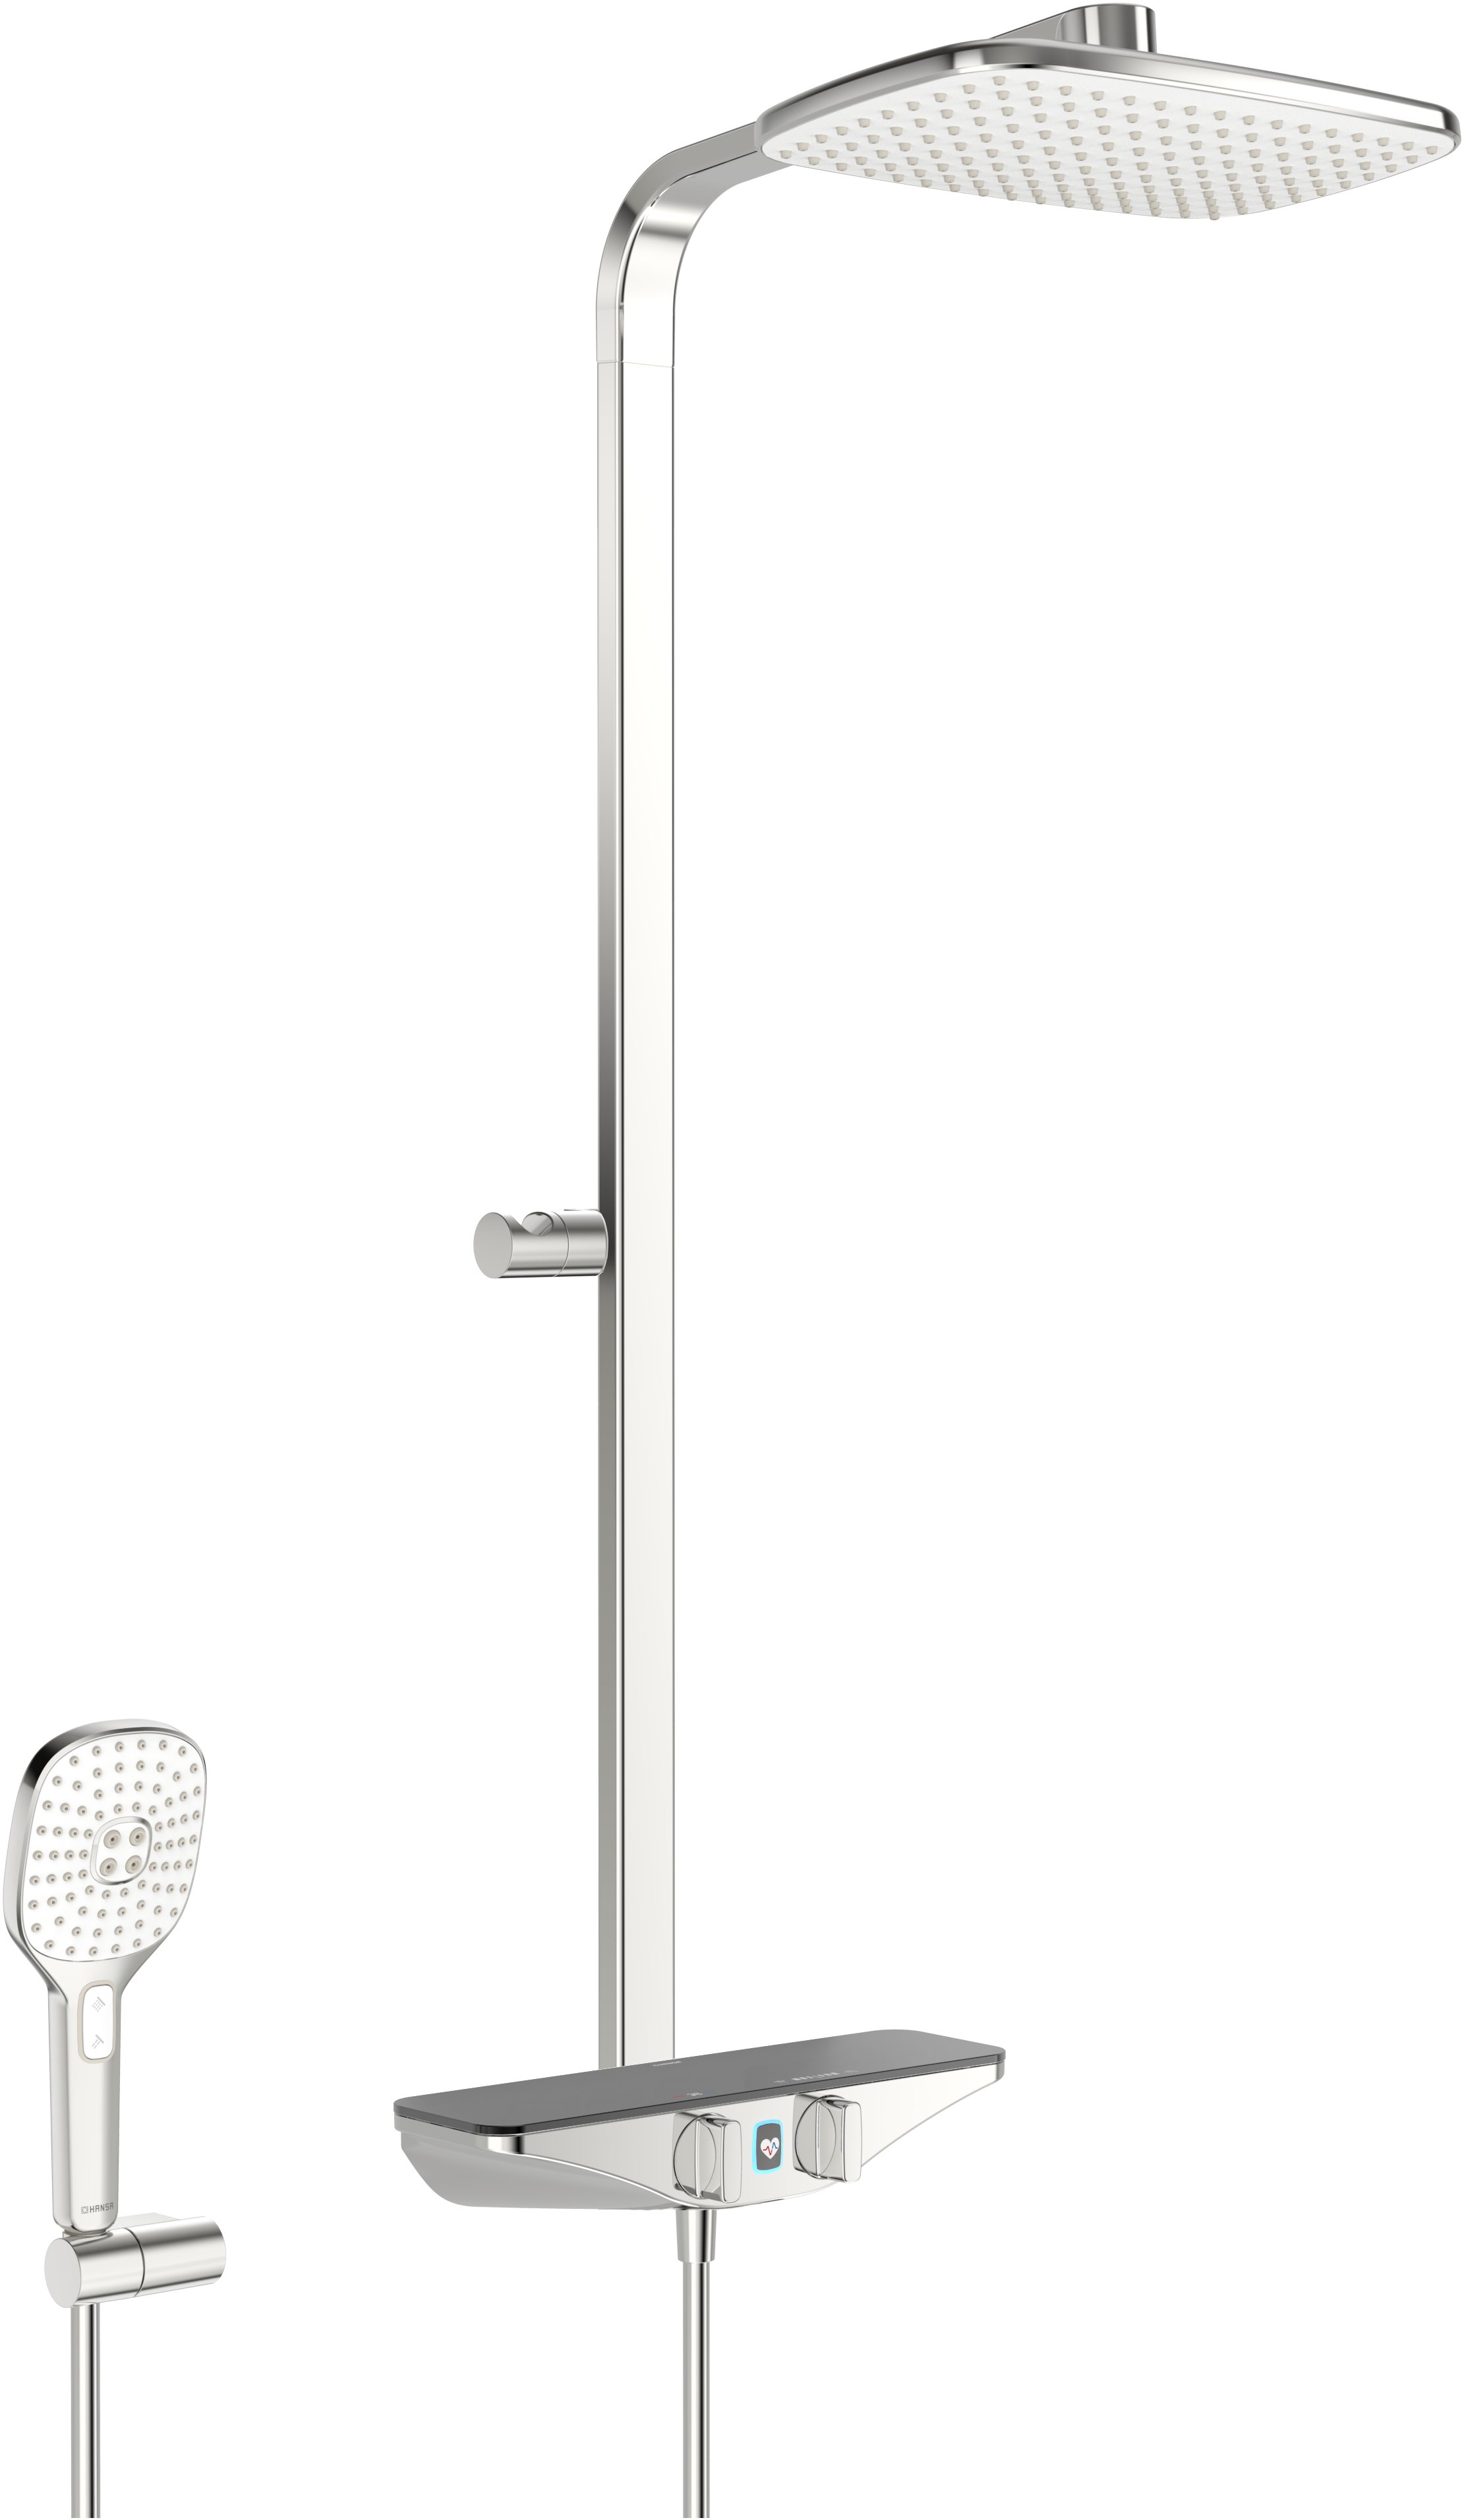 Hansaemotion Wellfit sprchový systém - nástěnná termostatická sprchová baterie, polička antracit 5865017284